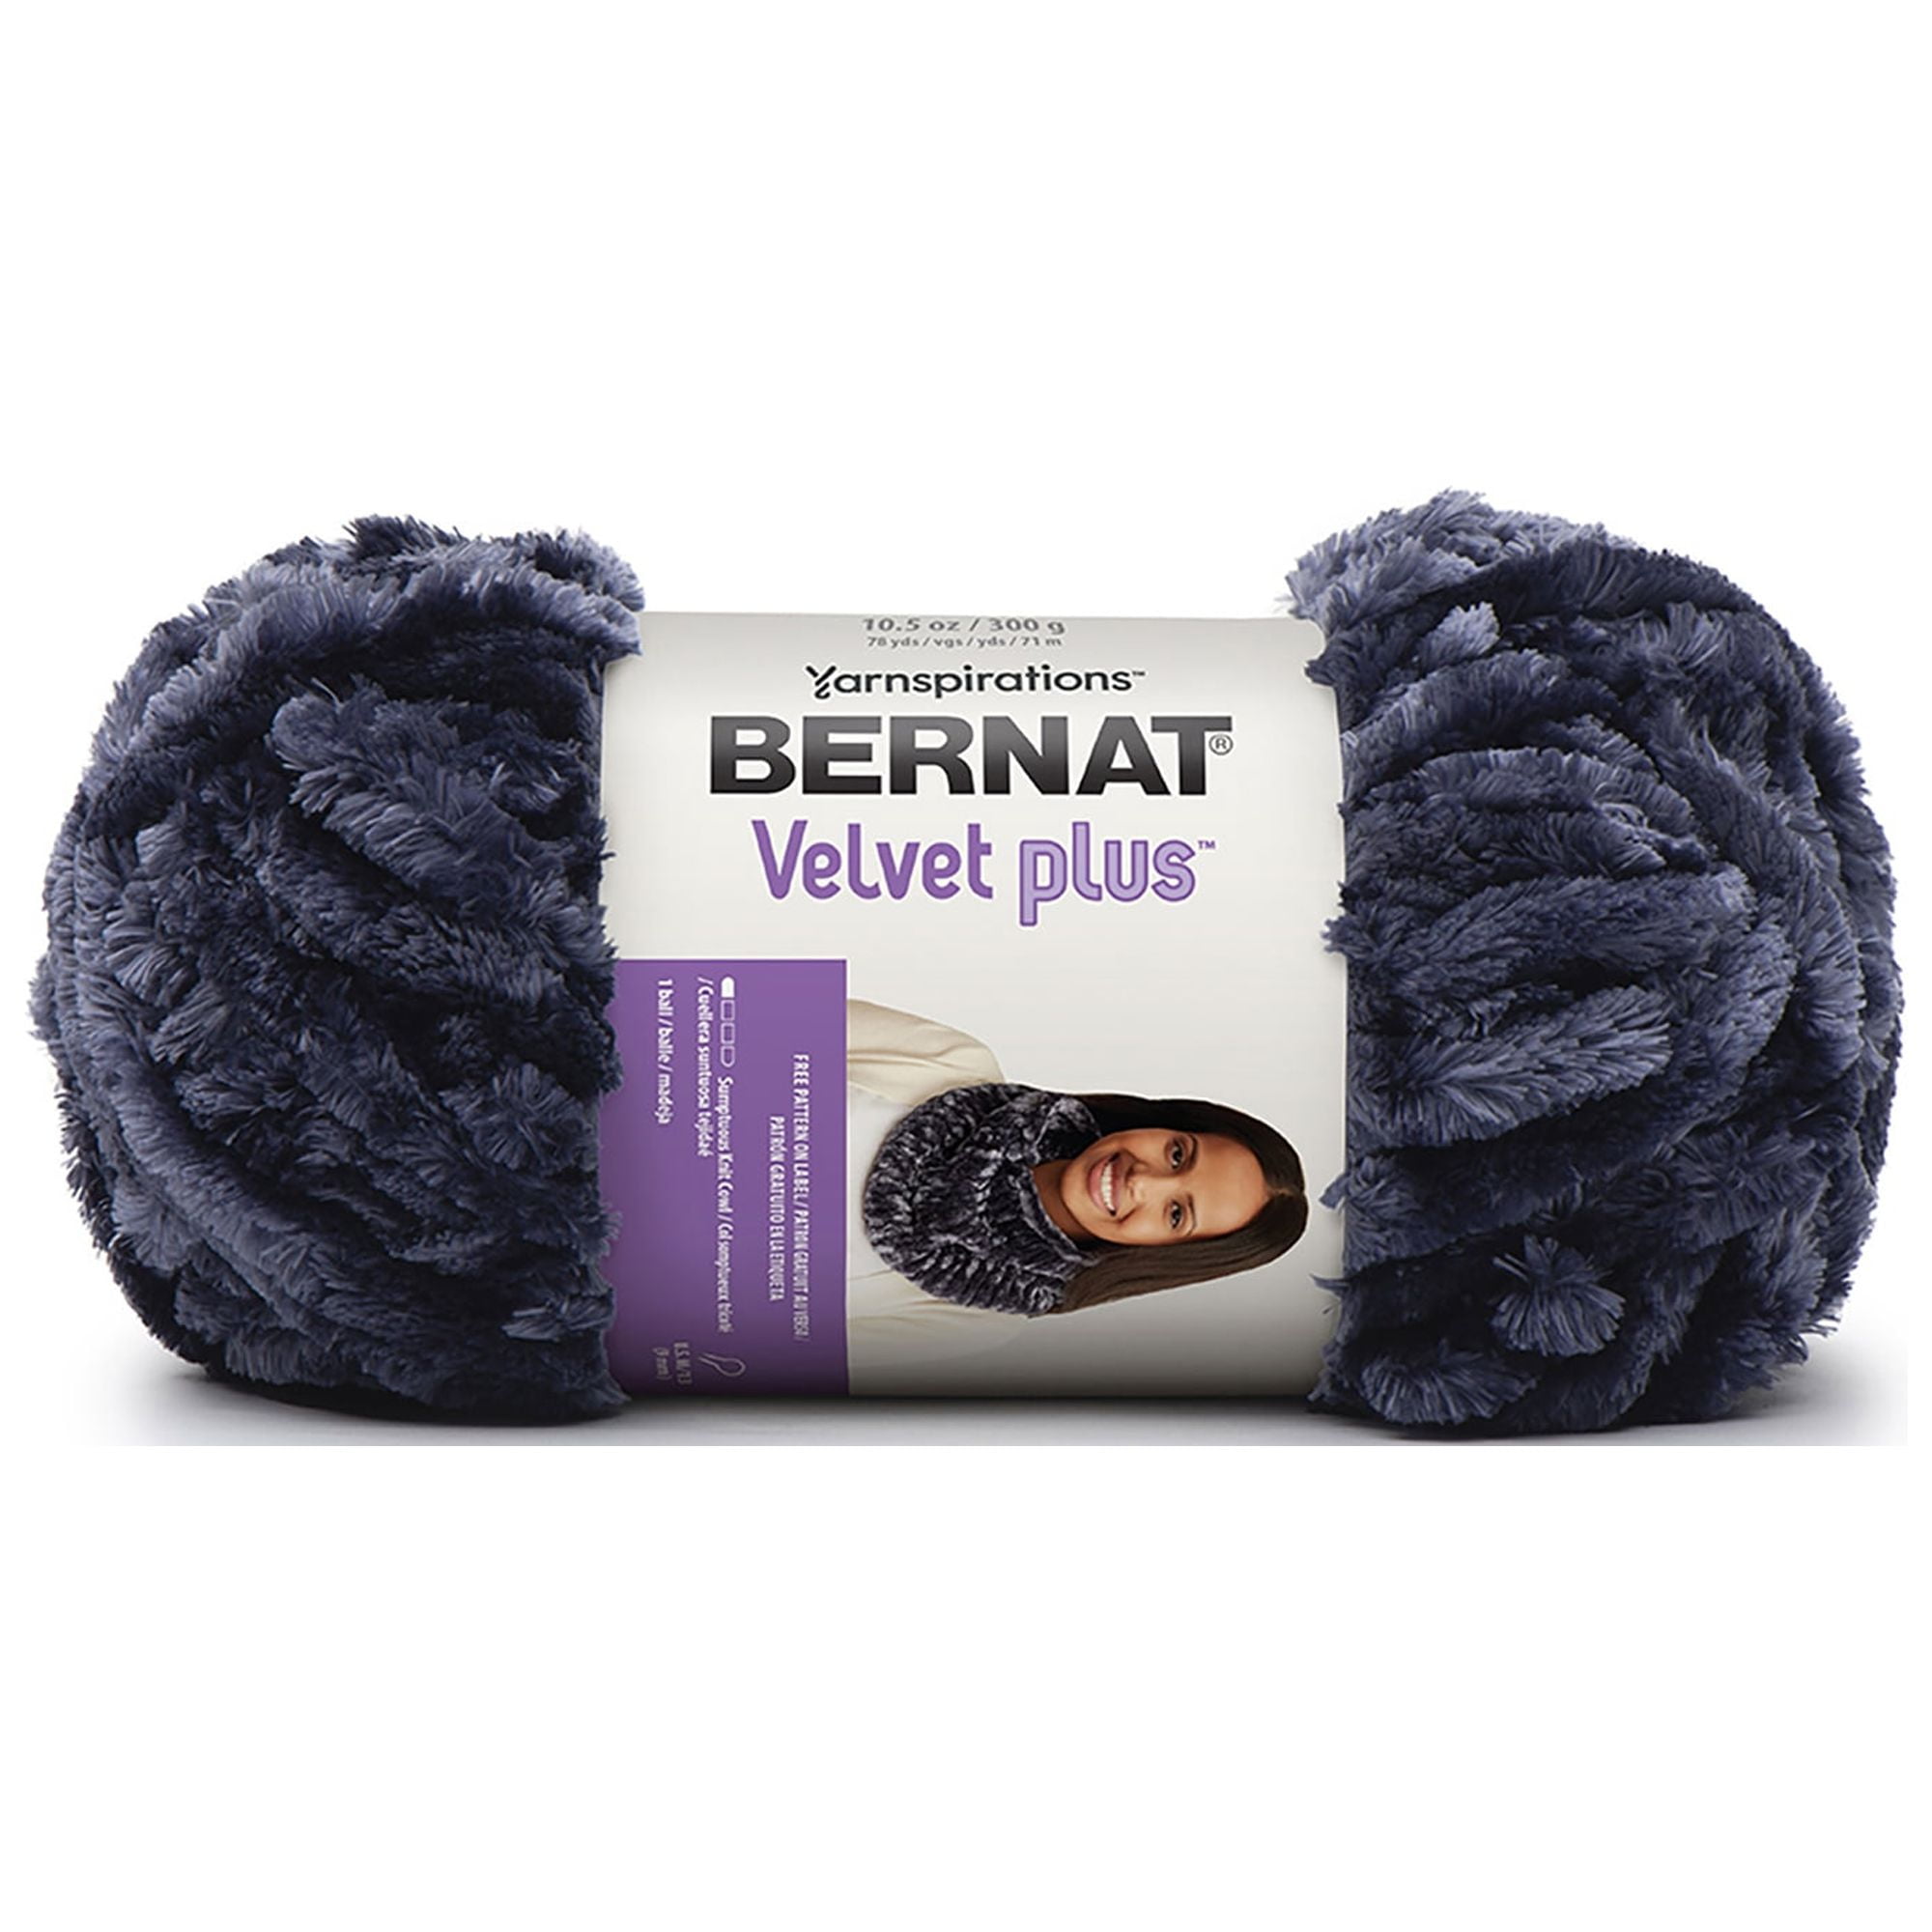 Bernat Velvet Yarn 100% Polyester Luxuriously Soft for Velvety